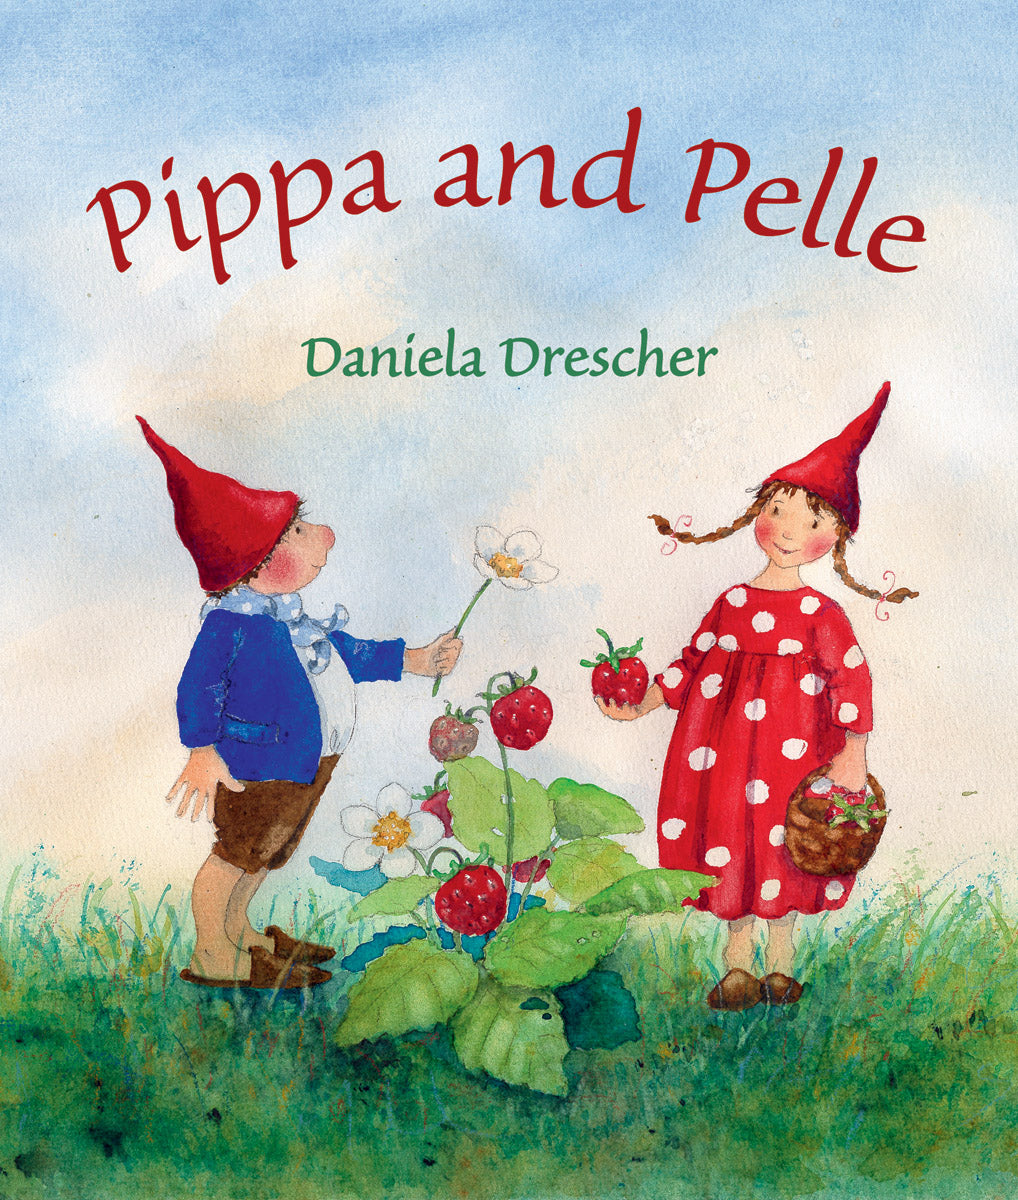 Pippa and Pelle by Daniela Drescher